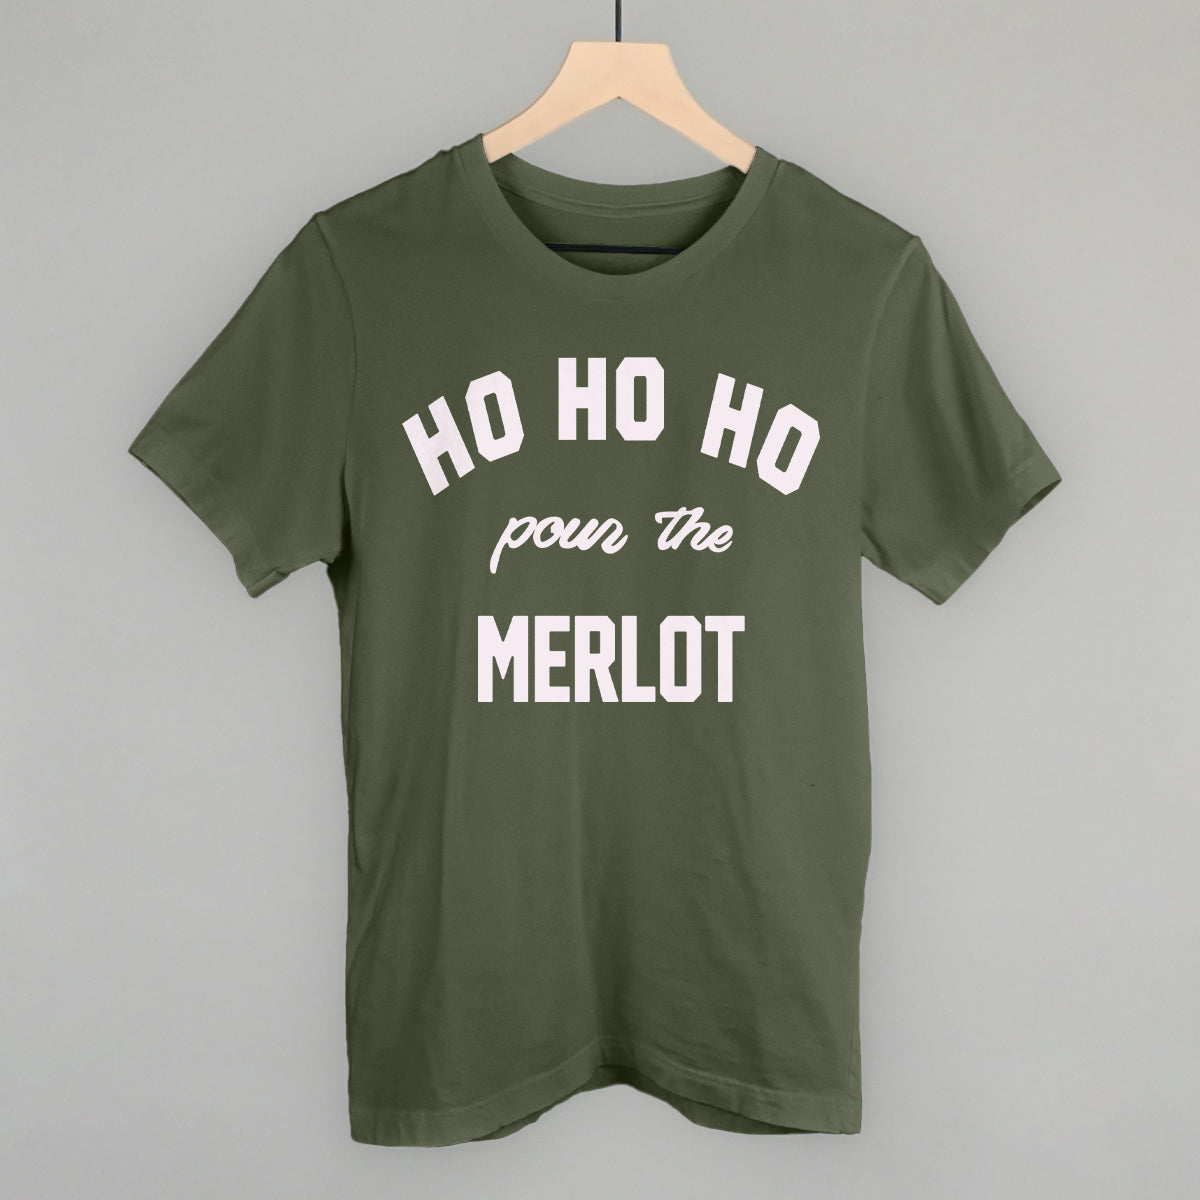 Ho Ho Ho Pour the Merlot